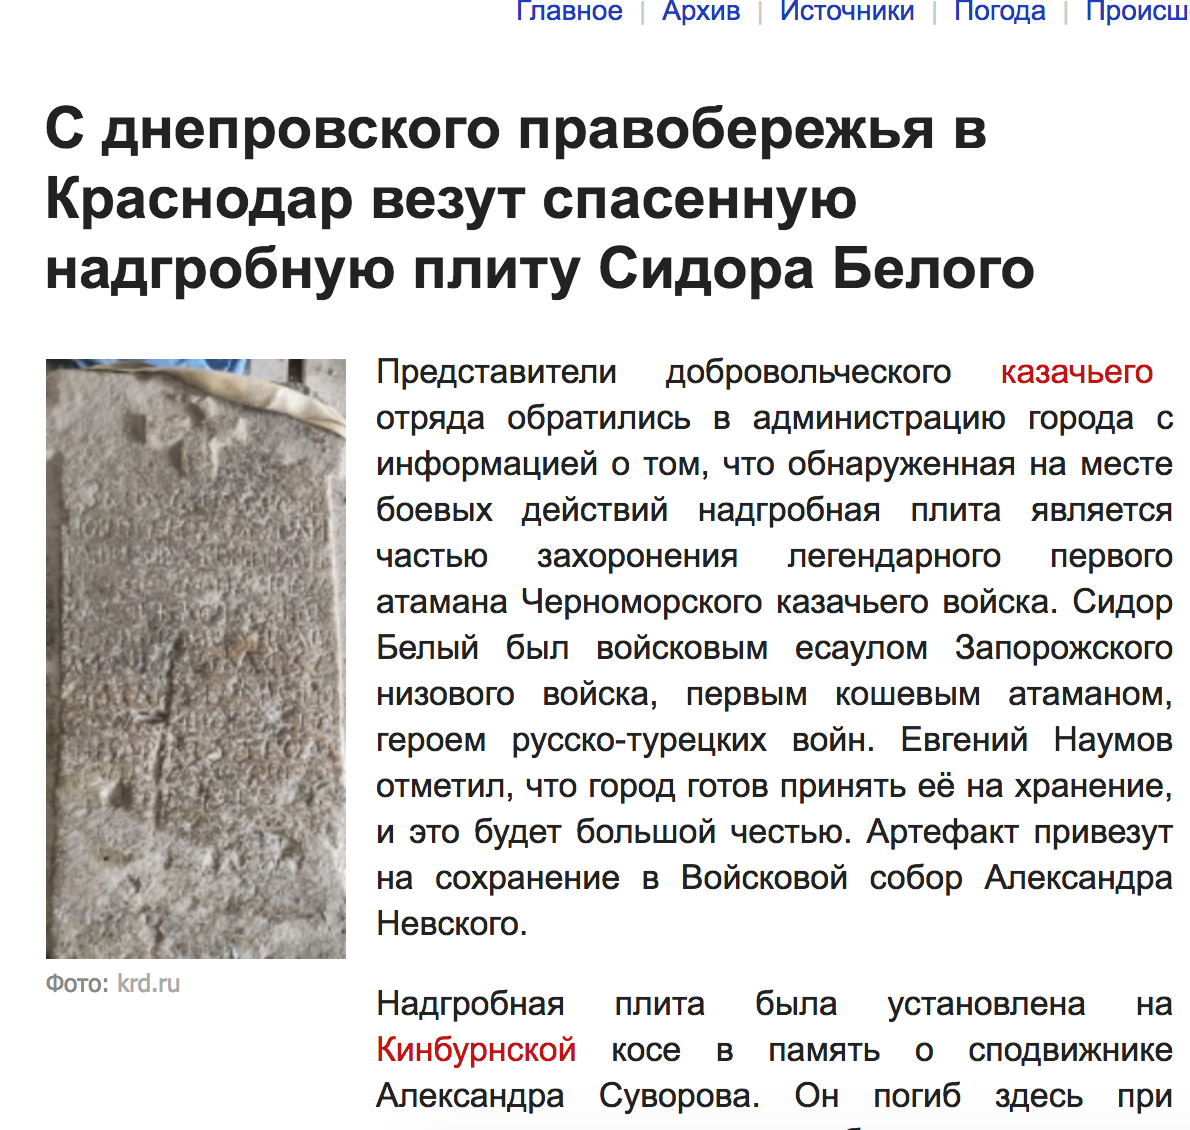 Россияне верят, что отхватили редкий артефакт. Скриншот из российского издания krasnodar.bezformata.com